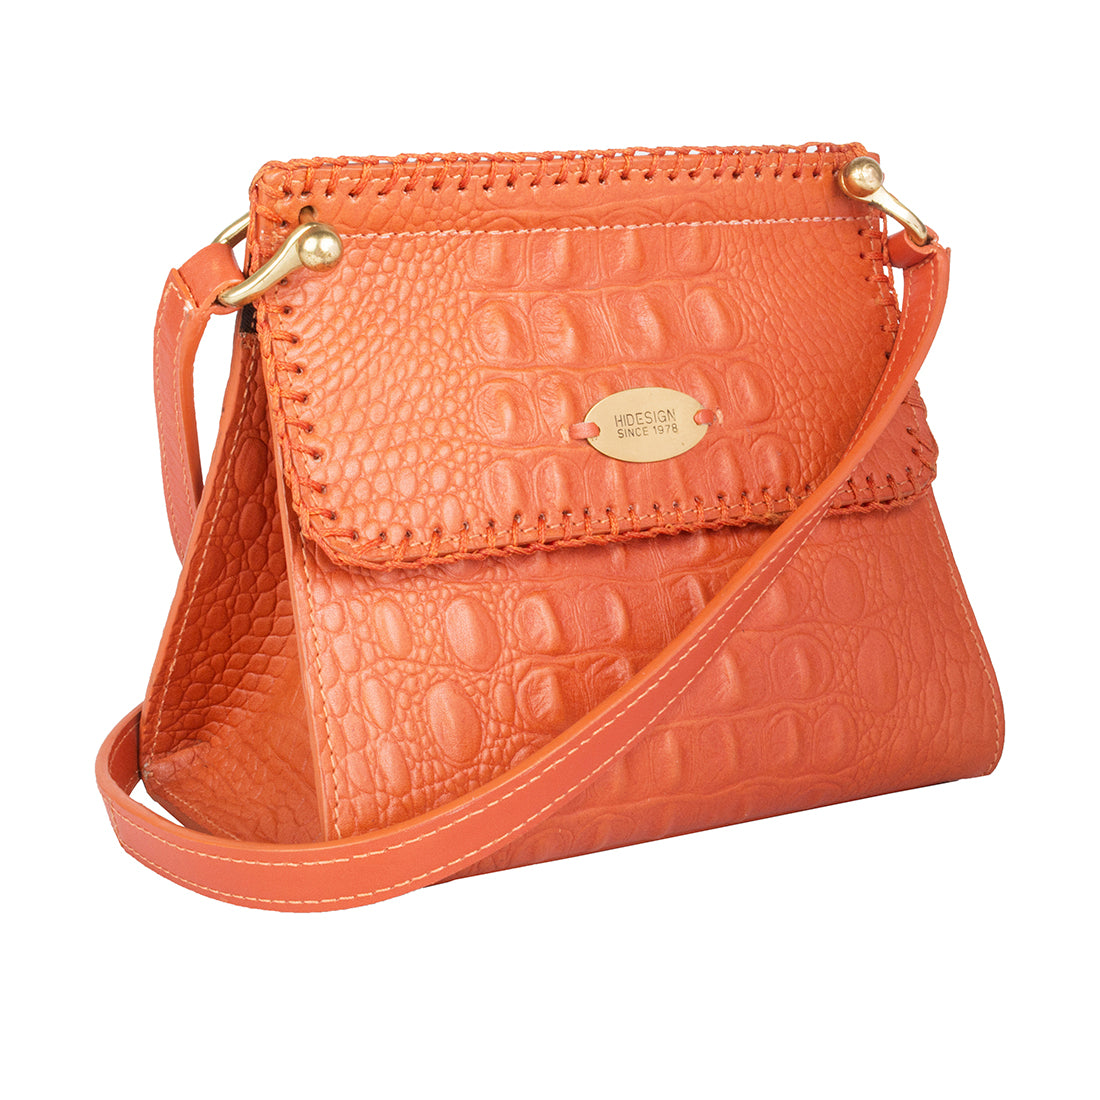 Buy Green Ee Zoey Mini Bag Online - Hidesign